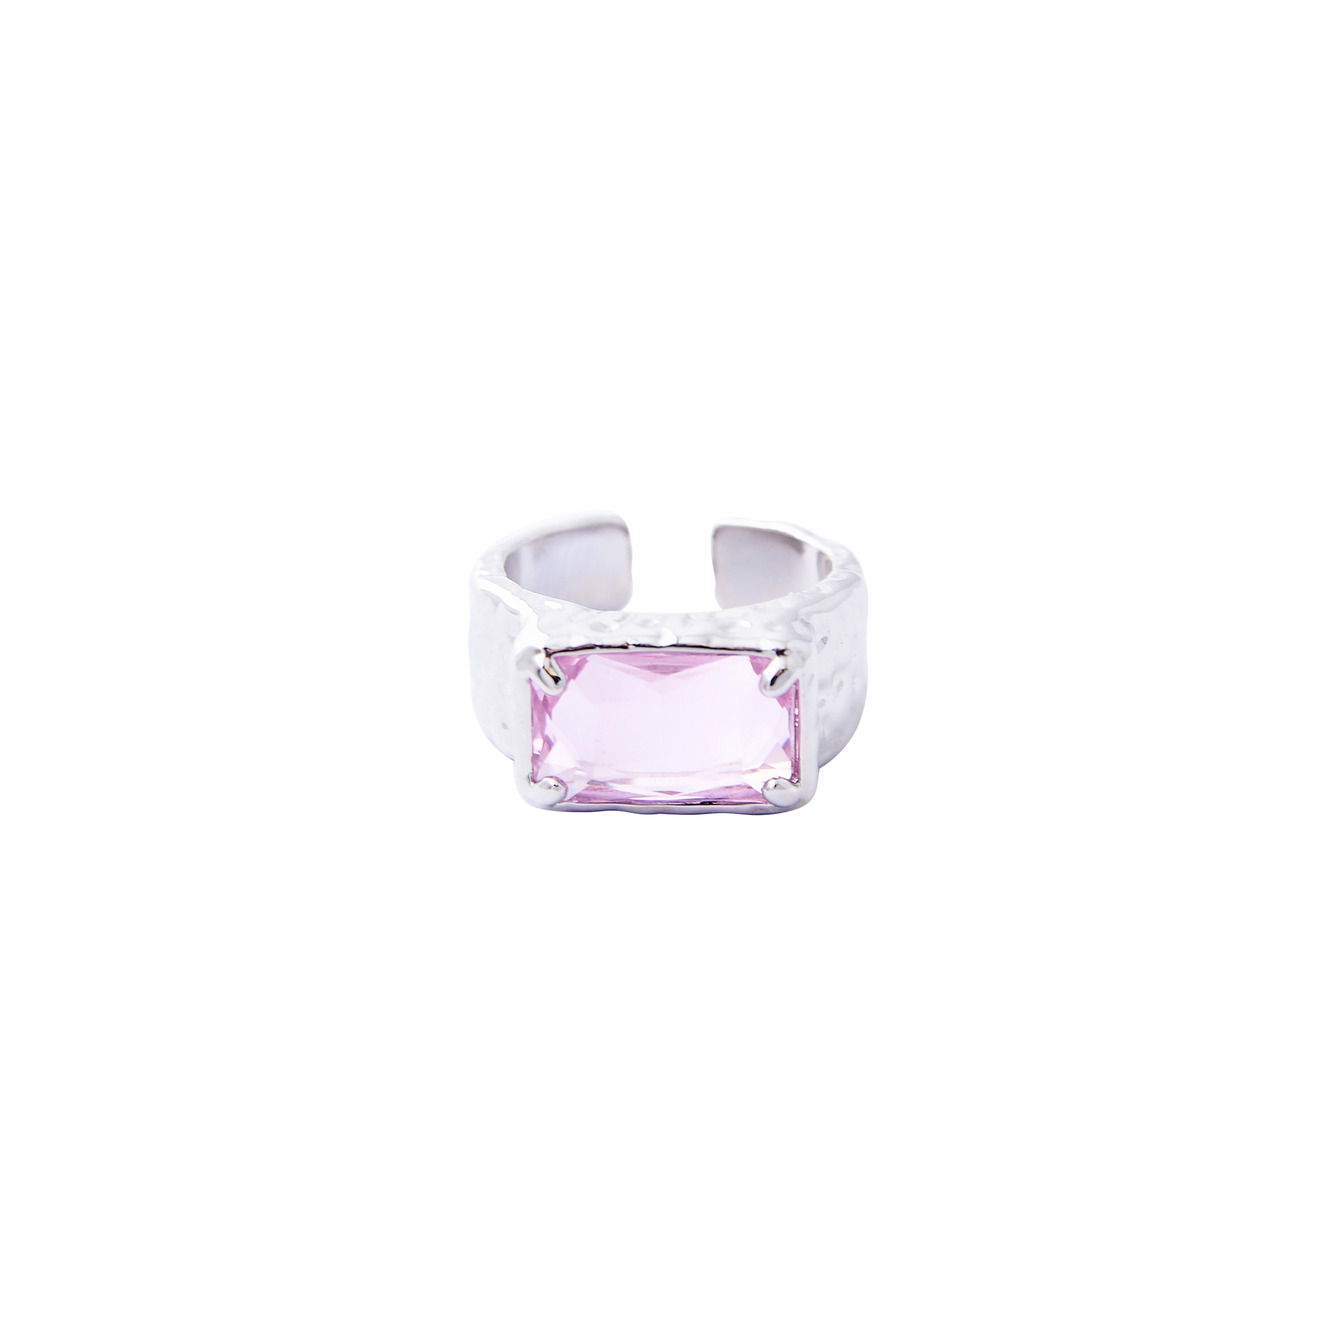 Herald Percy Серебристое кольцо с крупным розовым кристаллом